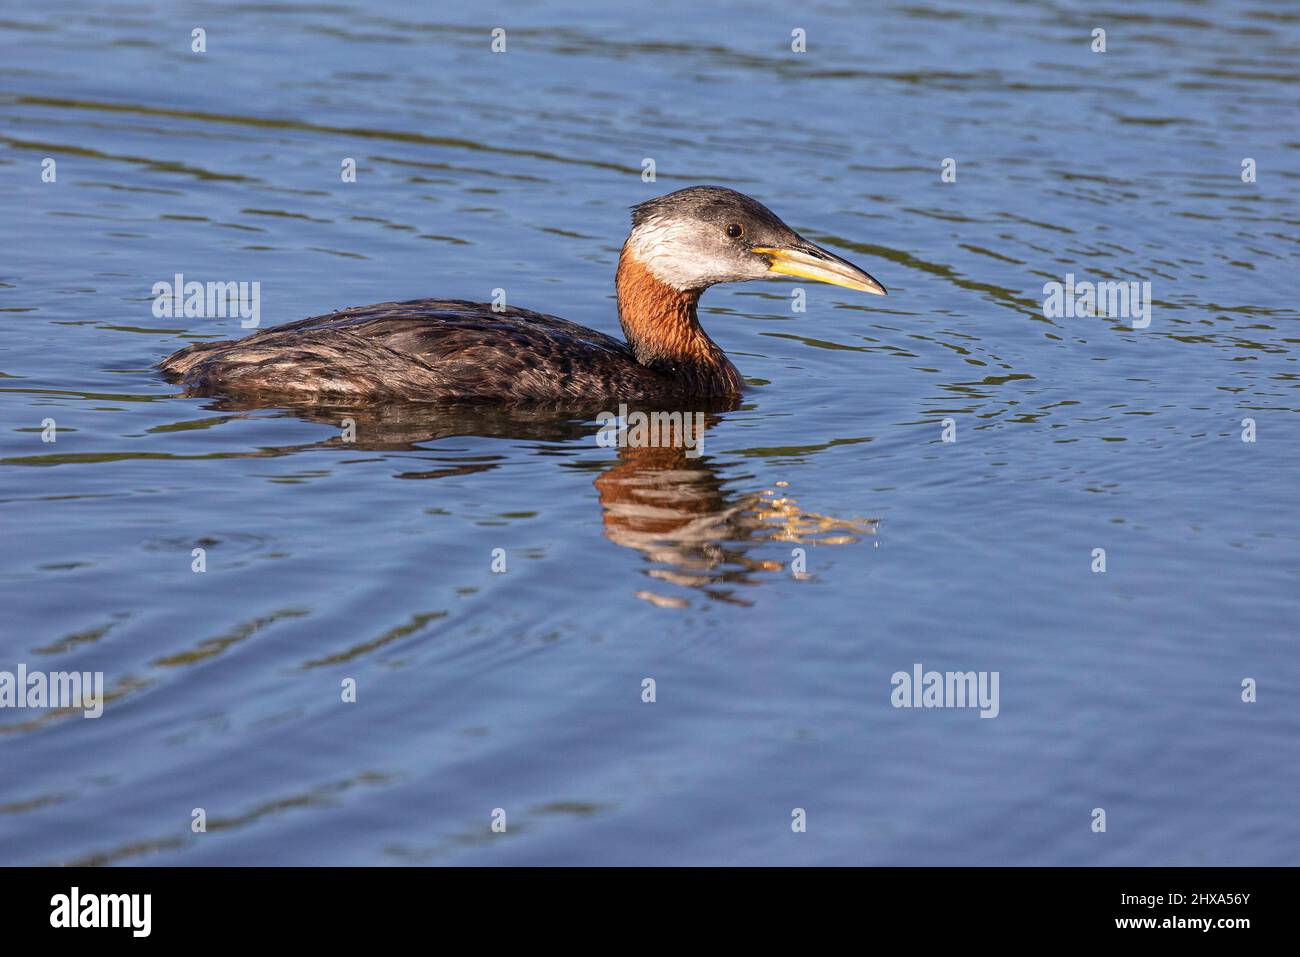 Grebe de cuello rojo en plumaje de cría, nadando en el agua del estanque. Podiceps grisegena Foto de stock